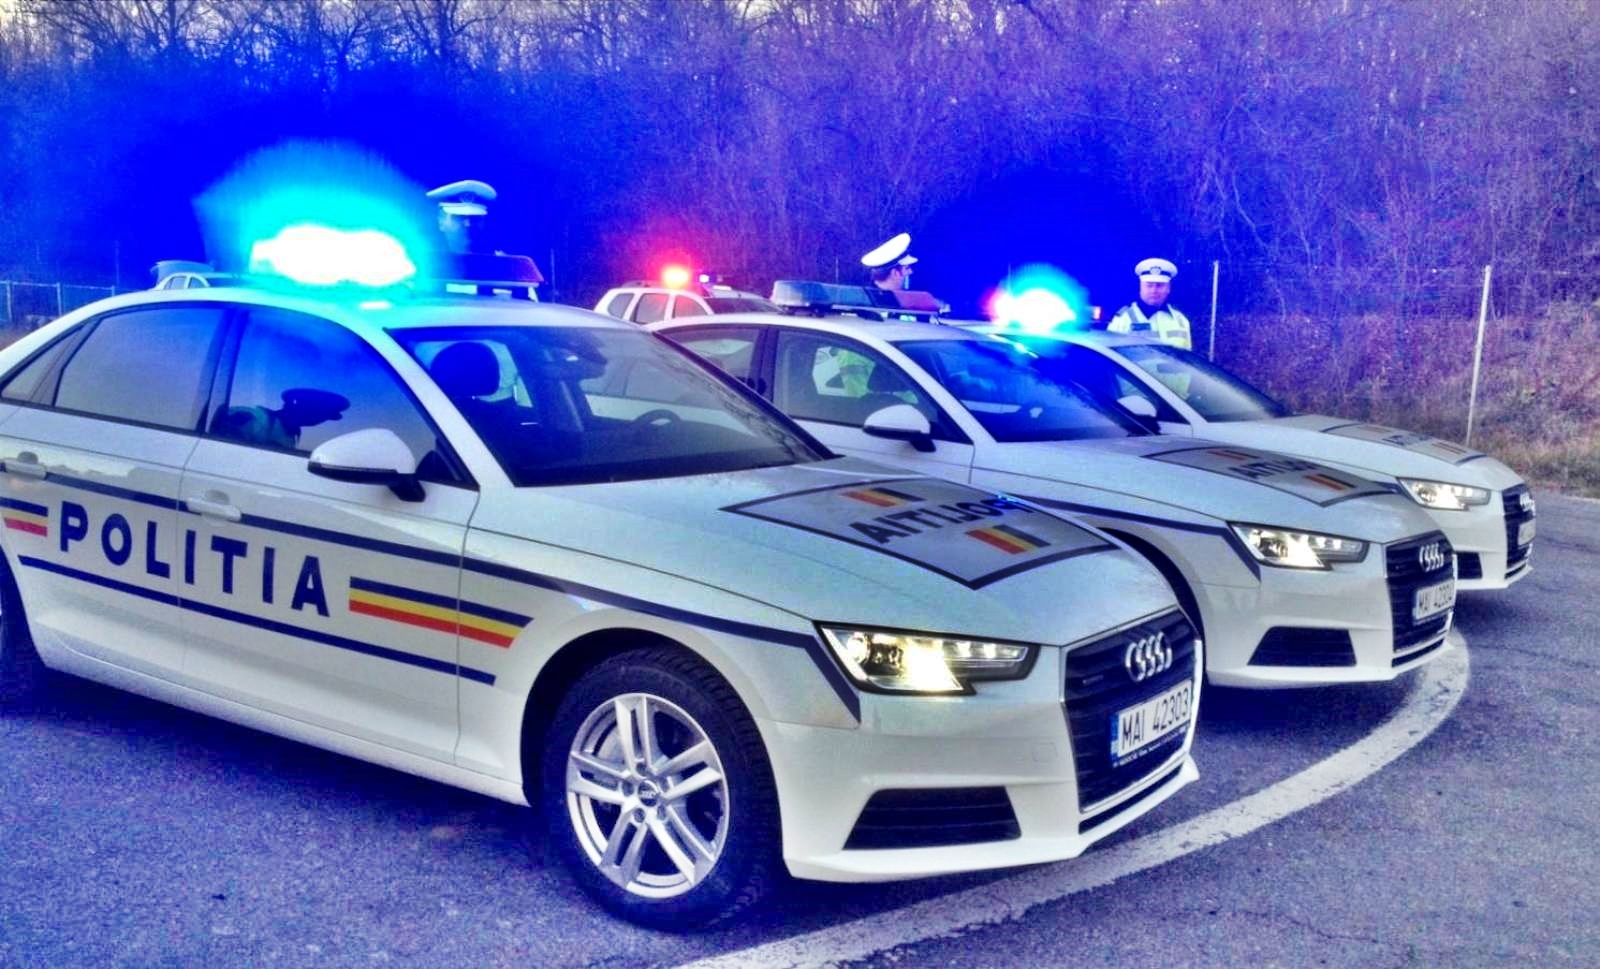 La police roumaine communique sur les limites de vitesse sur les autoroutes